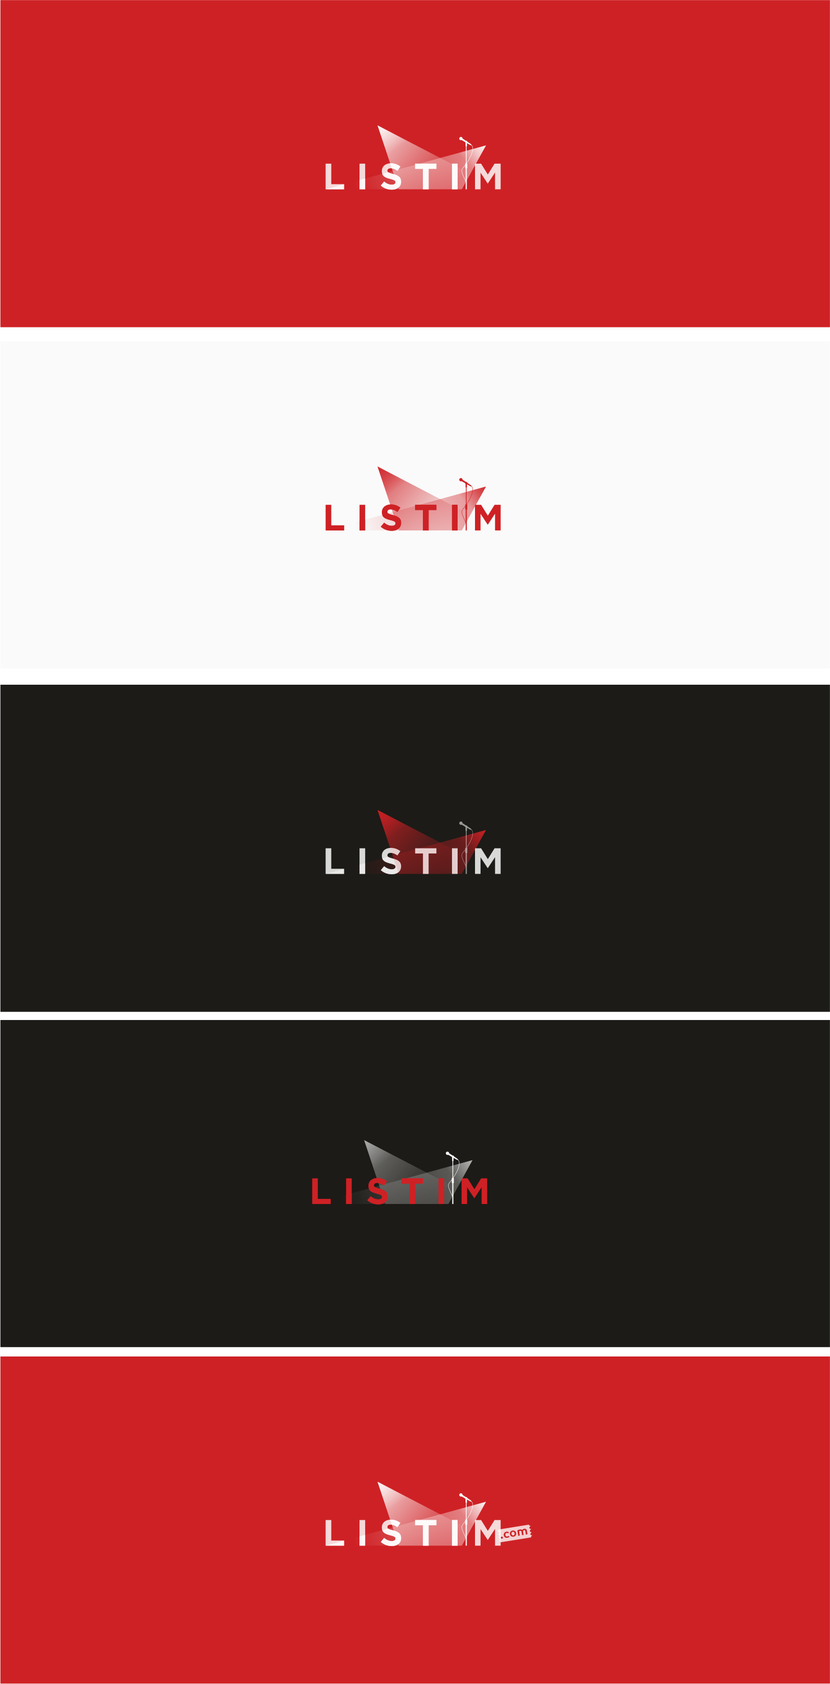 ... - Разработка логотипа для компании Listim - информационный ресурс о развлекательных  мероприятиях и продажа билетов на мероприятия